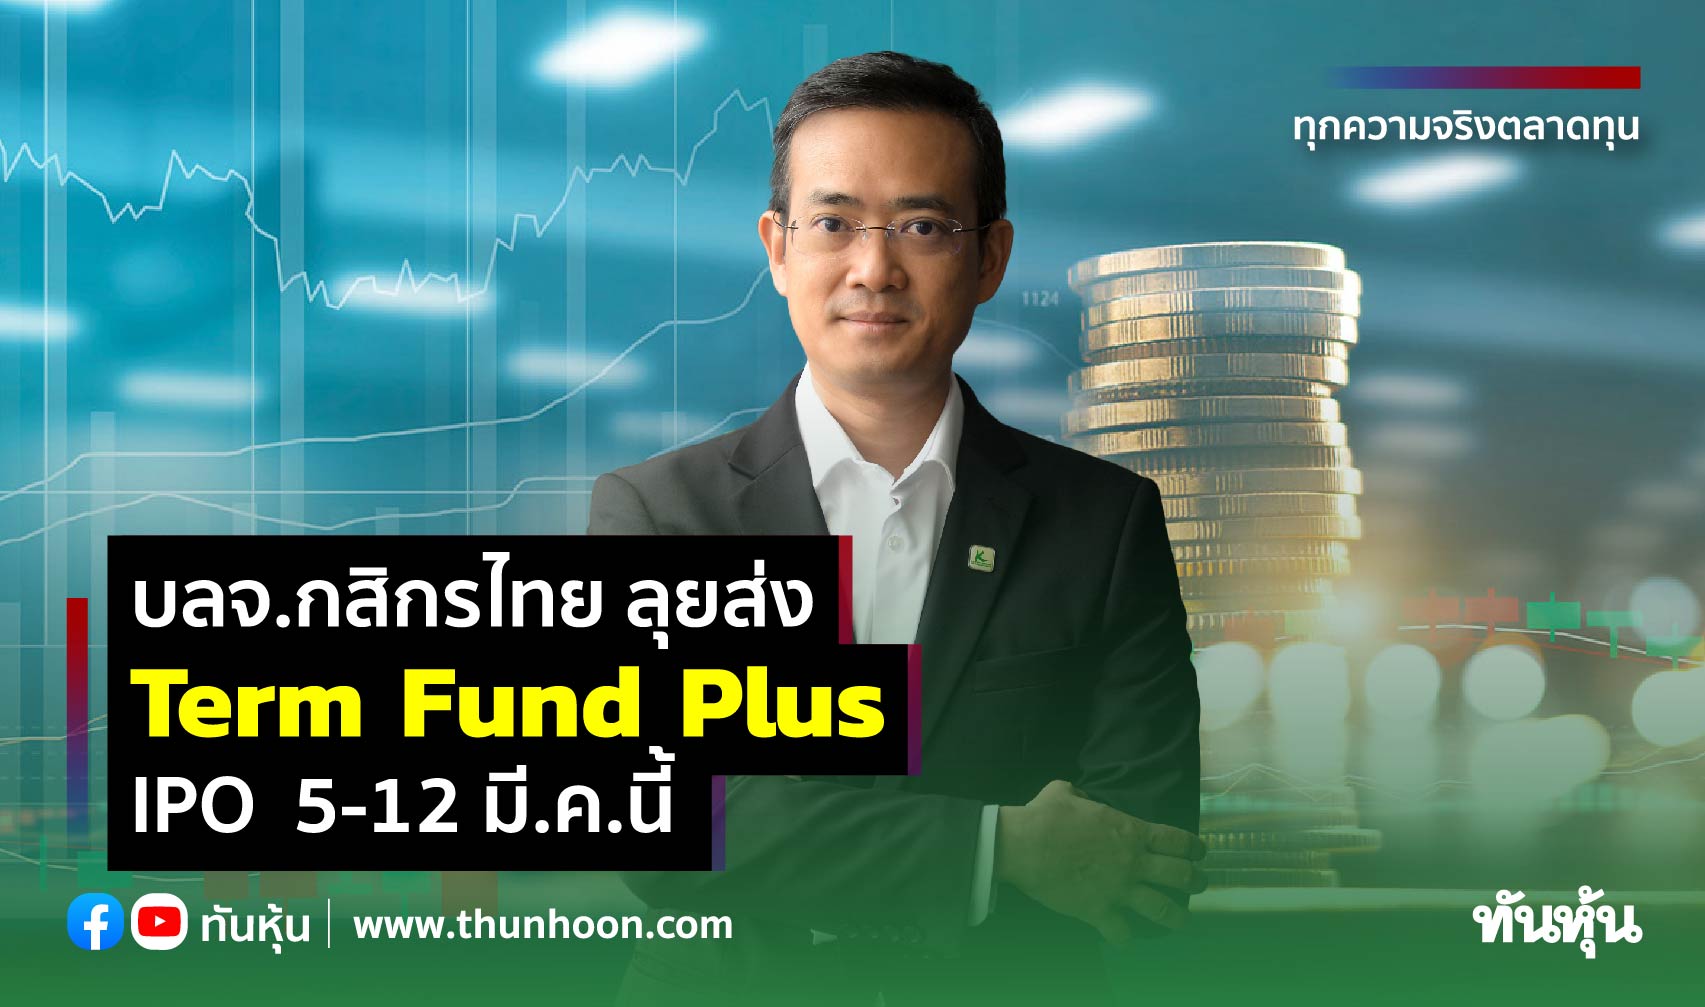 บลจ.กสิกรไทย ส่ง Term Fund Plus ลงทุน 1 ปี